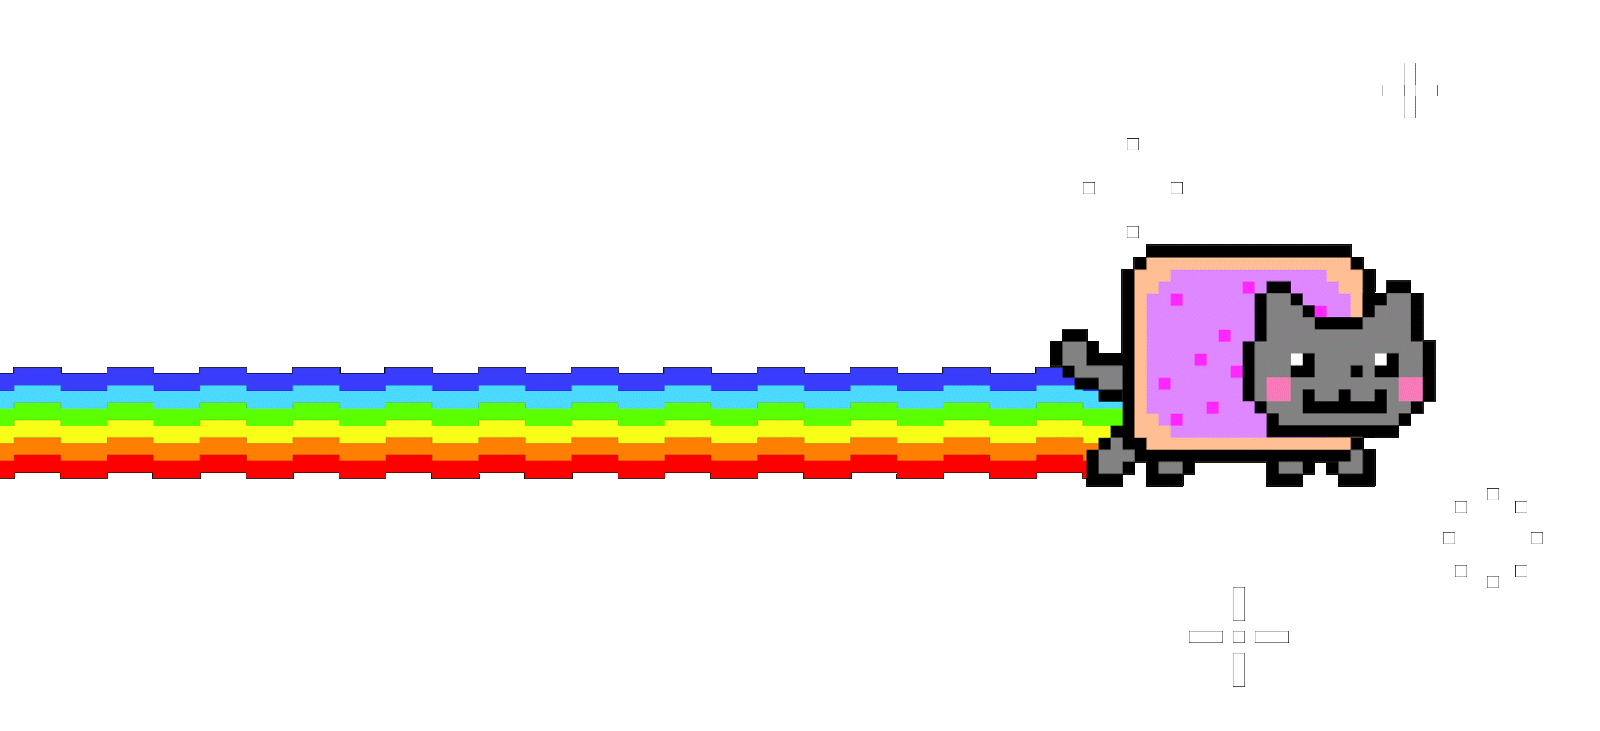 Nyan Cat by kkiittuuss PlusPn